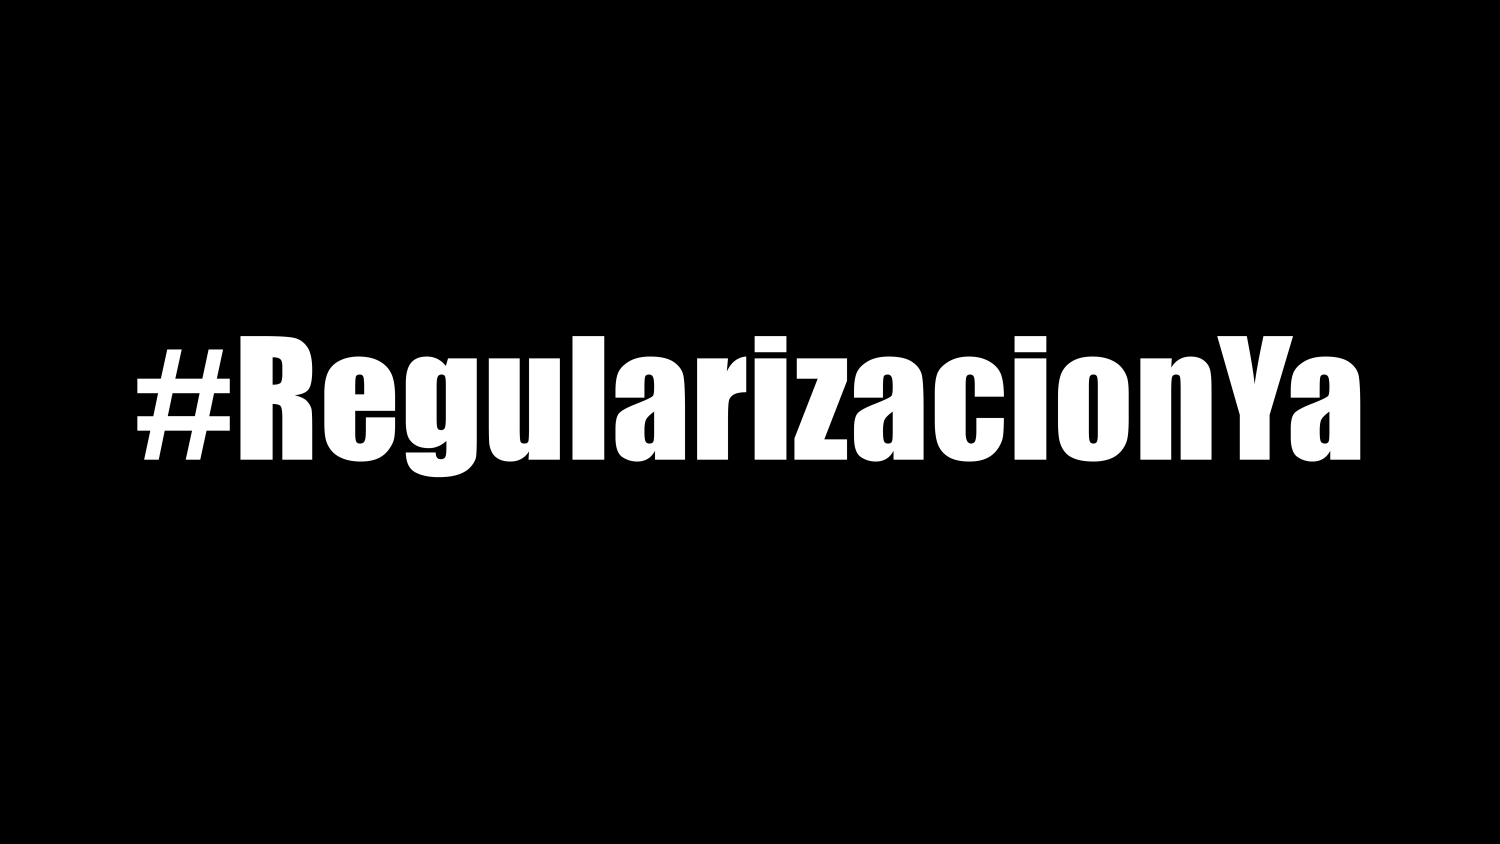 #RegularizaciónYa: Demanda urgente por la regularización las personas migrantes y refugiadas ante la emergencia sanitaria